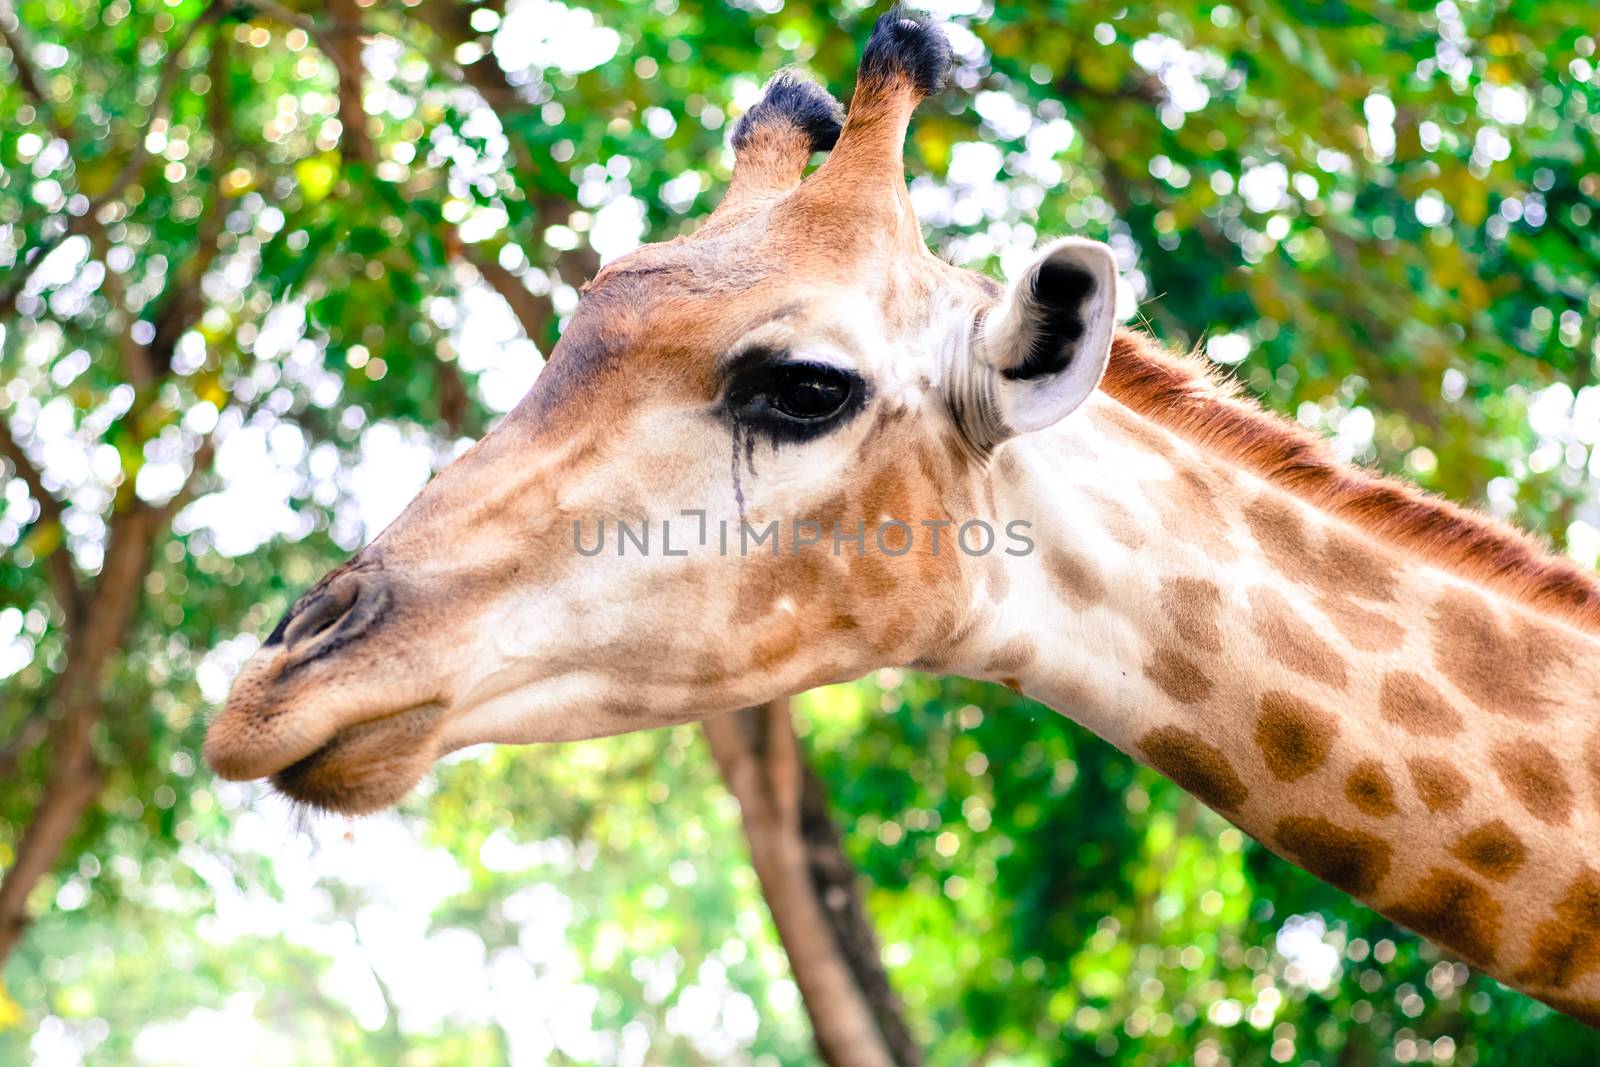 Giraffe eat leaves